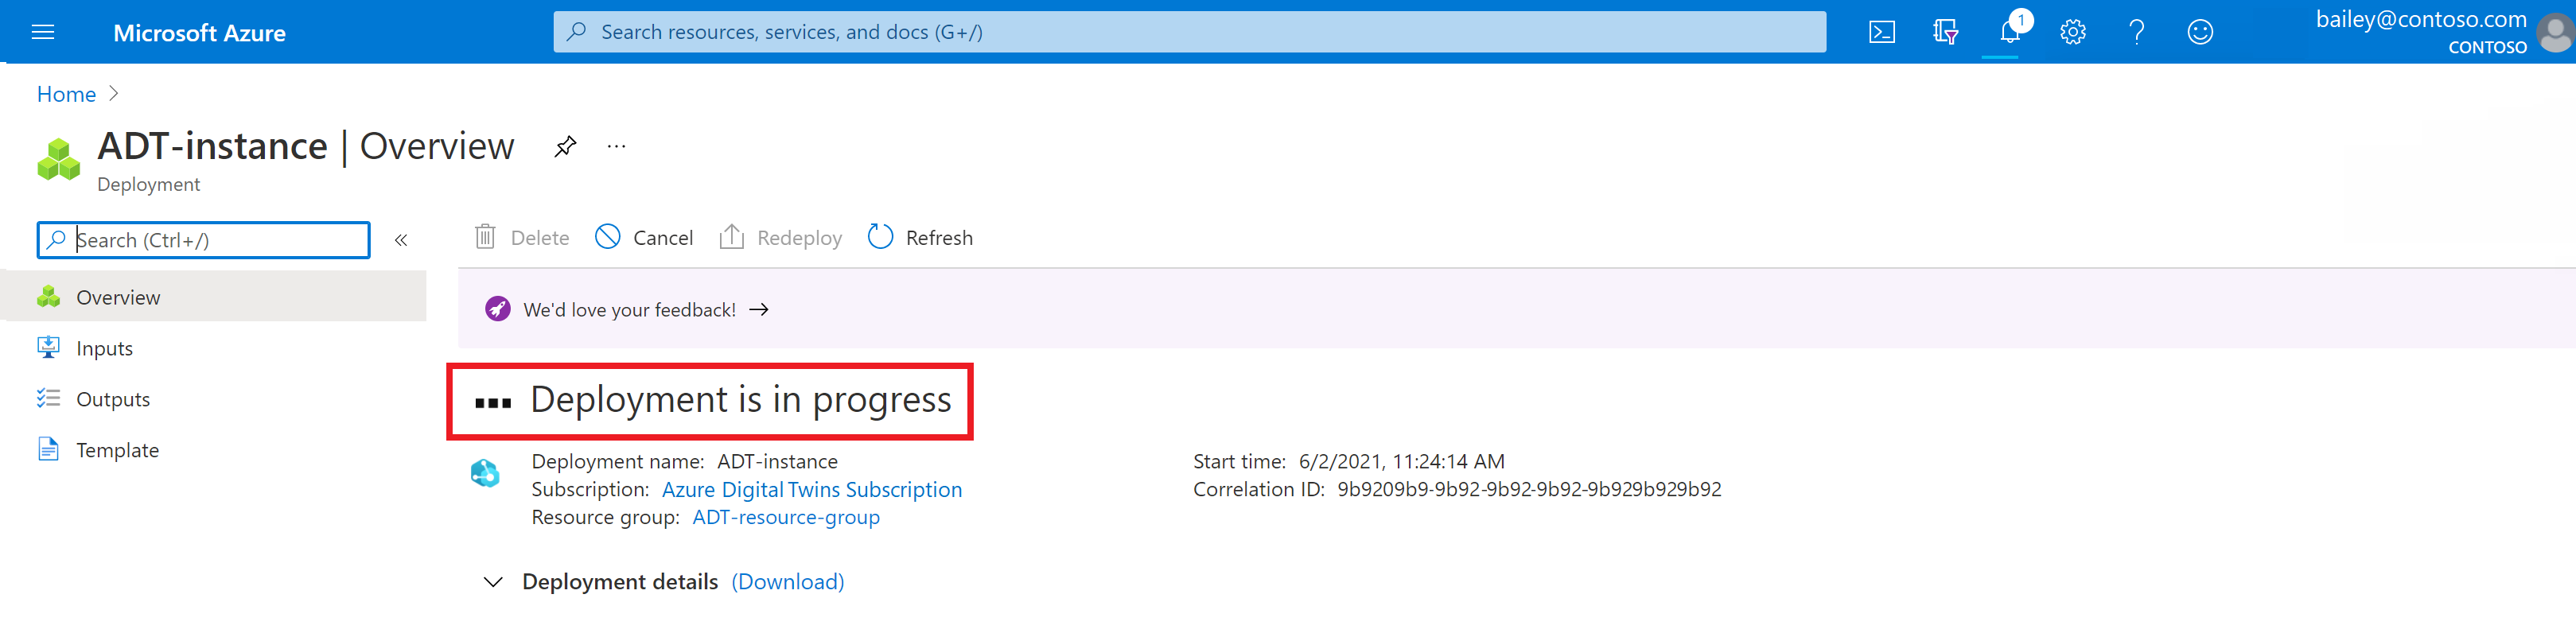 Zrzut ekranu przedstawiający stronę wdrażania usługi Azure Digital Twins w witrynie Azure Portal. Strona wskazuje, że wdrażanie jest w toku.